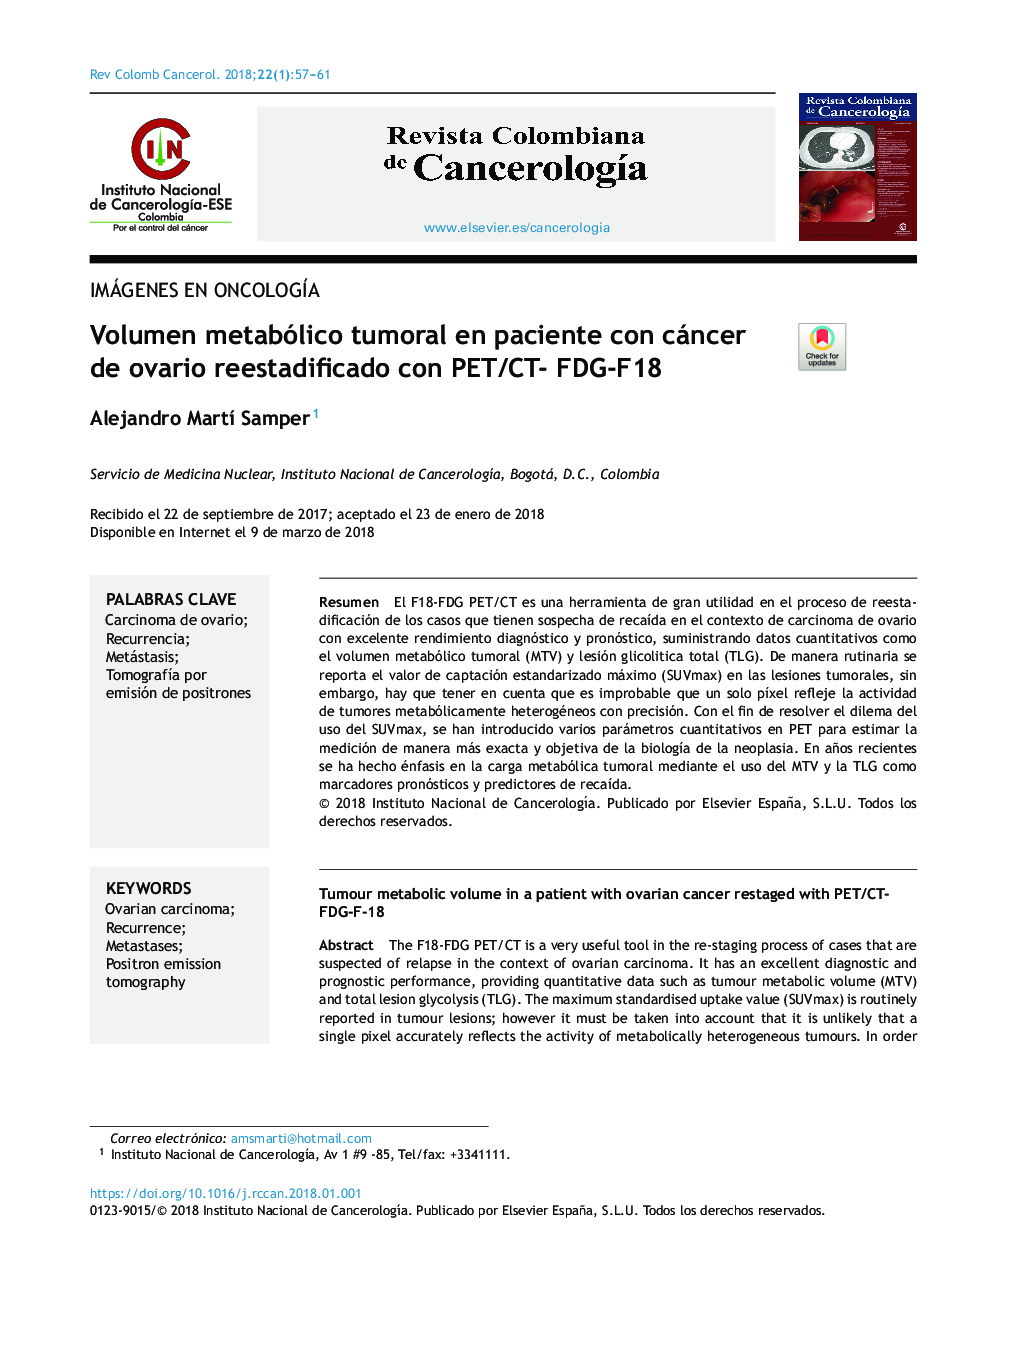 Volumen metabólico tumoral en paciente con cáncer de ovario reestadificado con PET/CT- FDG-F18